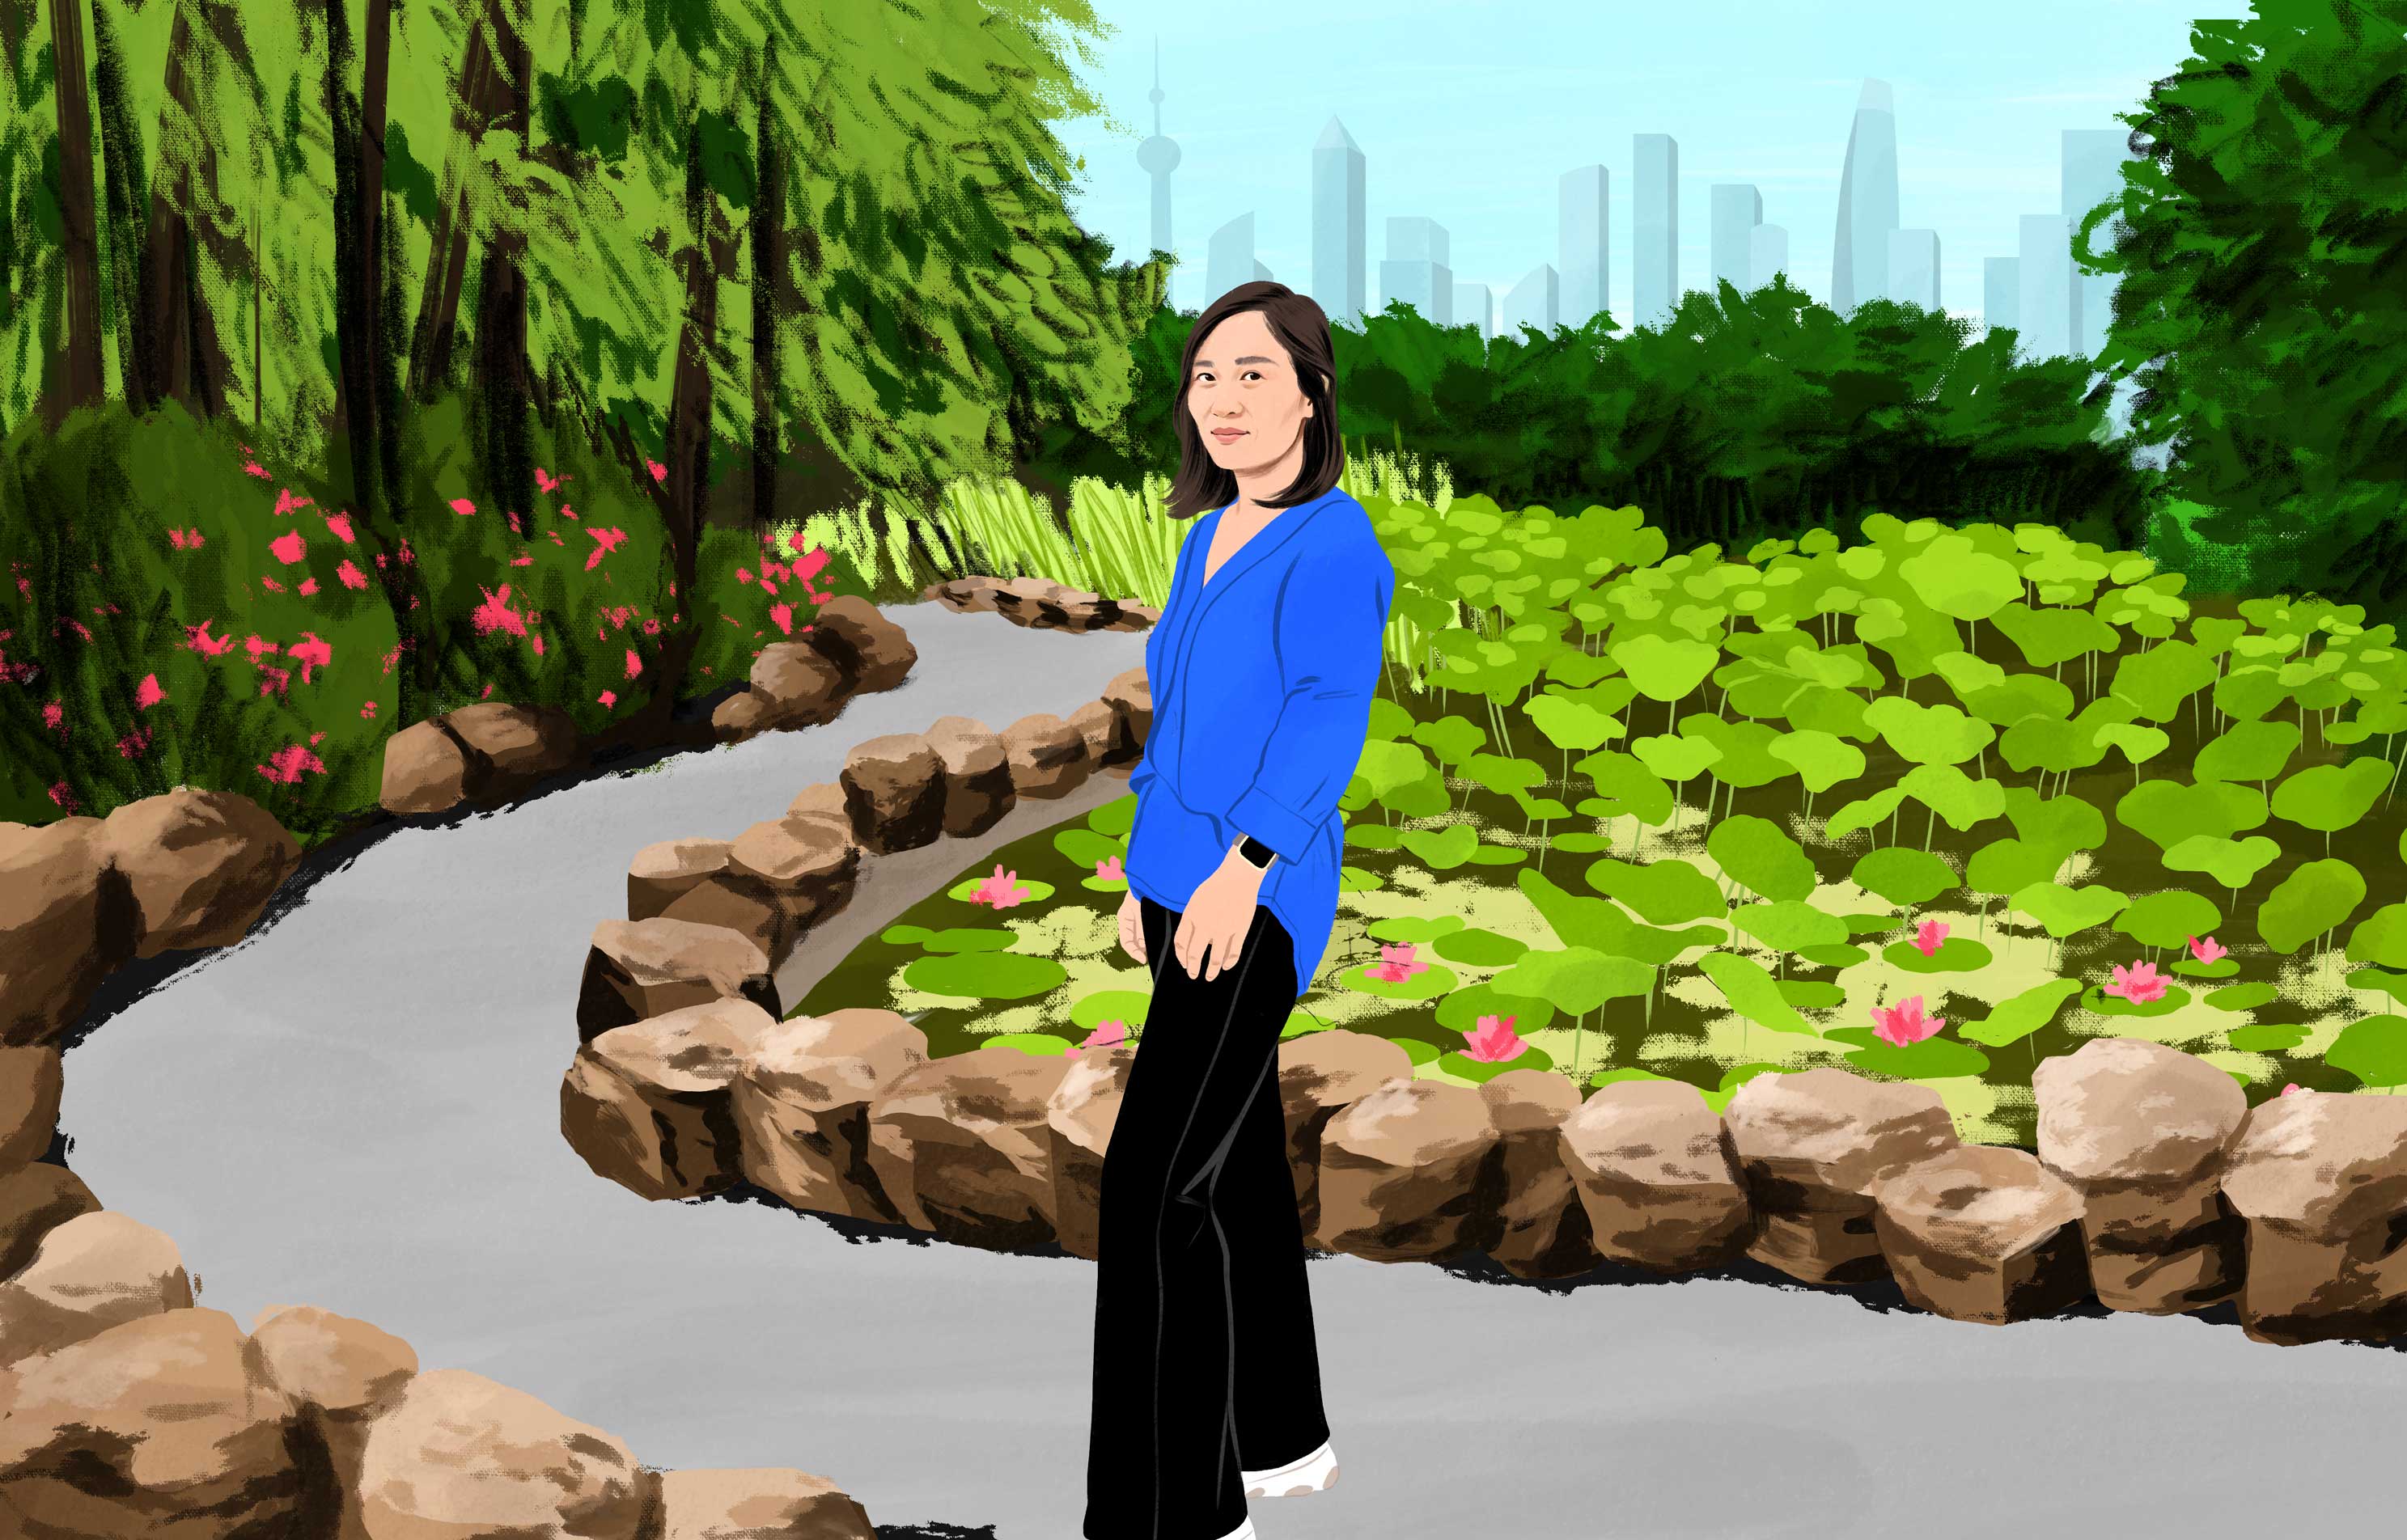 Xu sourit en marchant dans un parc urbain verdoyant avec des gratte-ciel modernes au loin. 